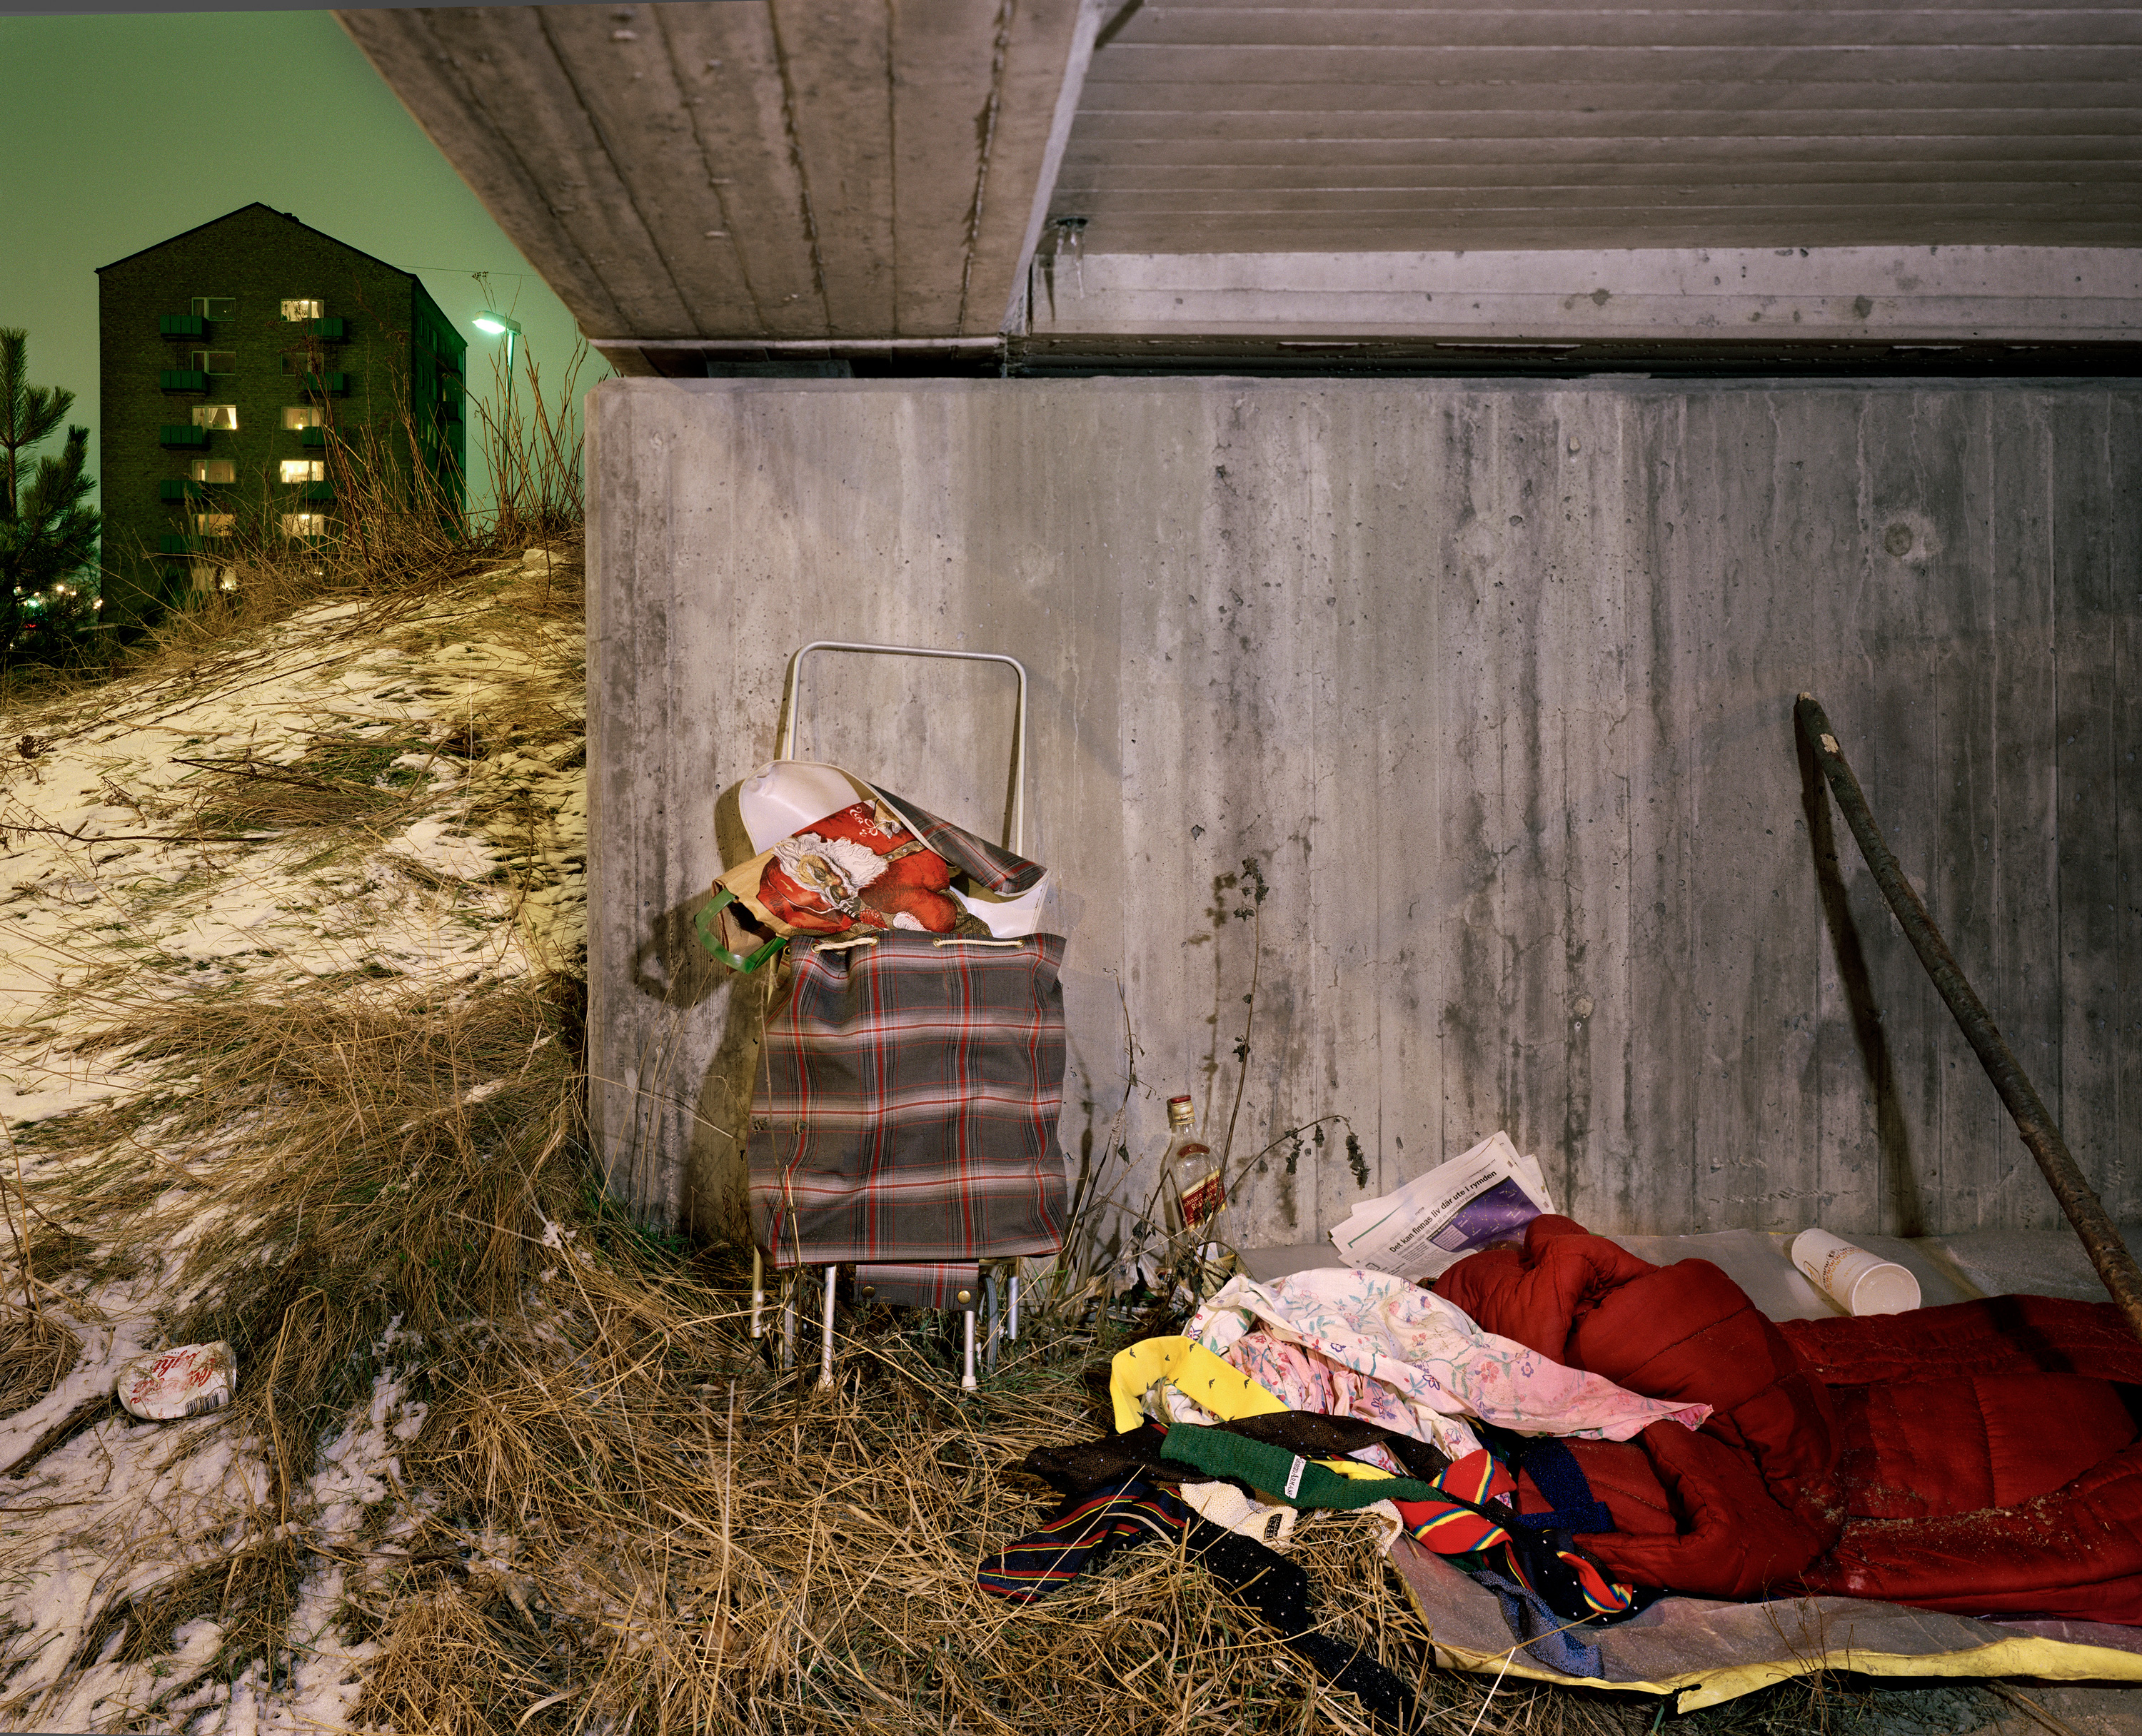 nattbild med motiv under en bro där någon ordnat en sovplats